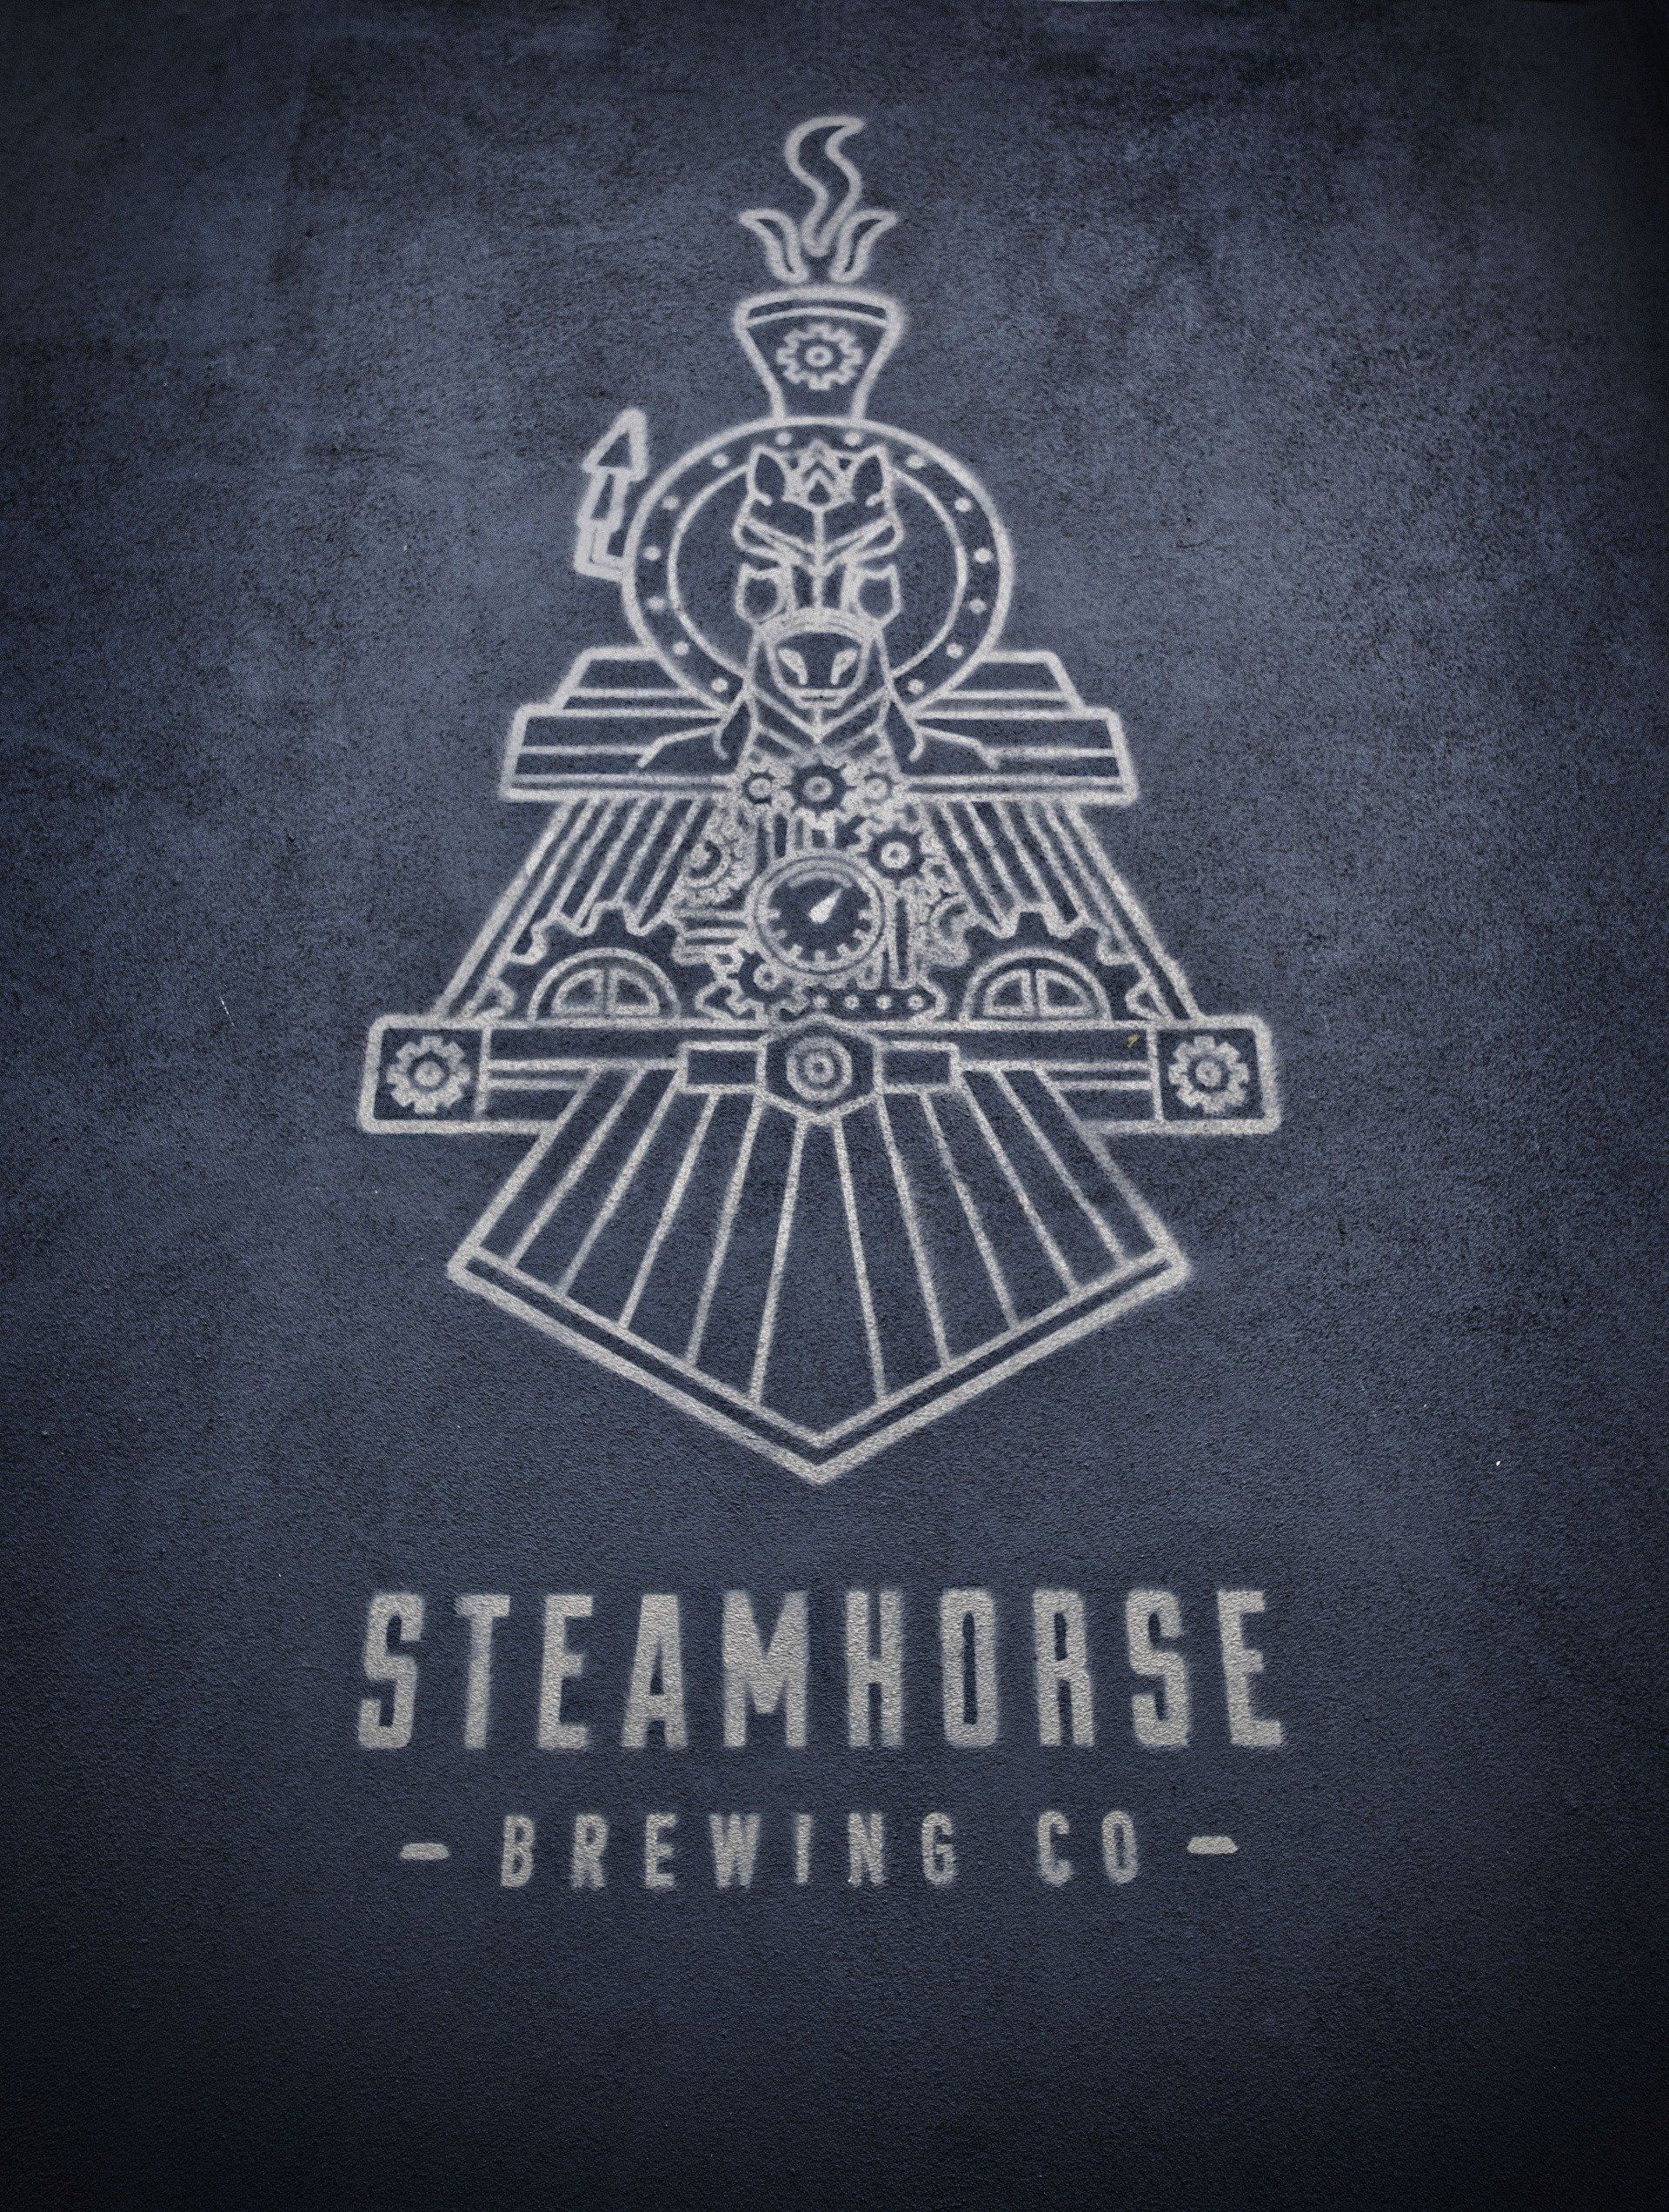 Steamhorse Brewery